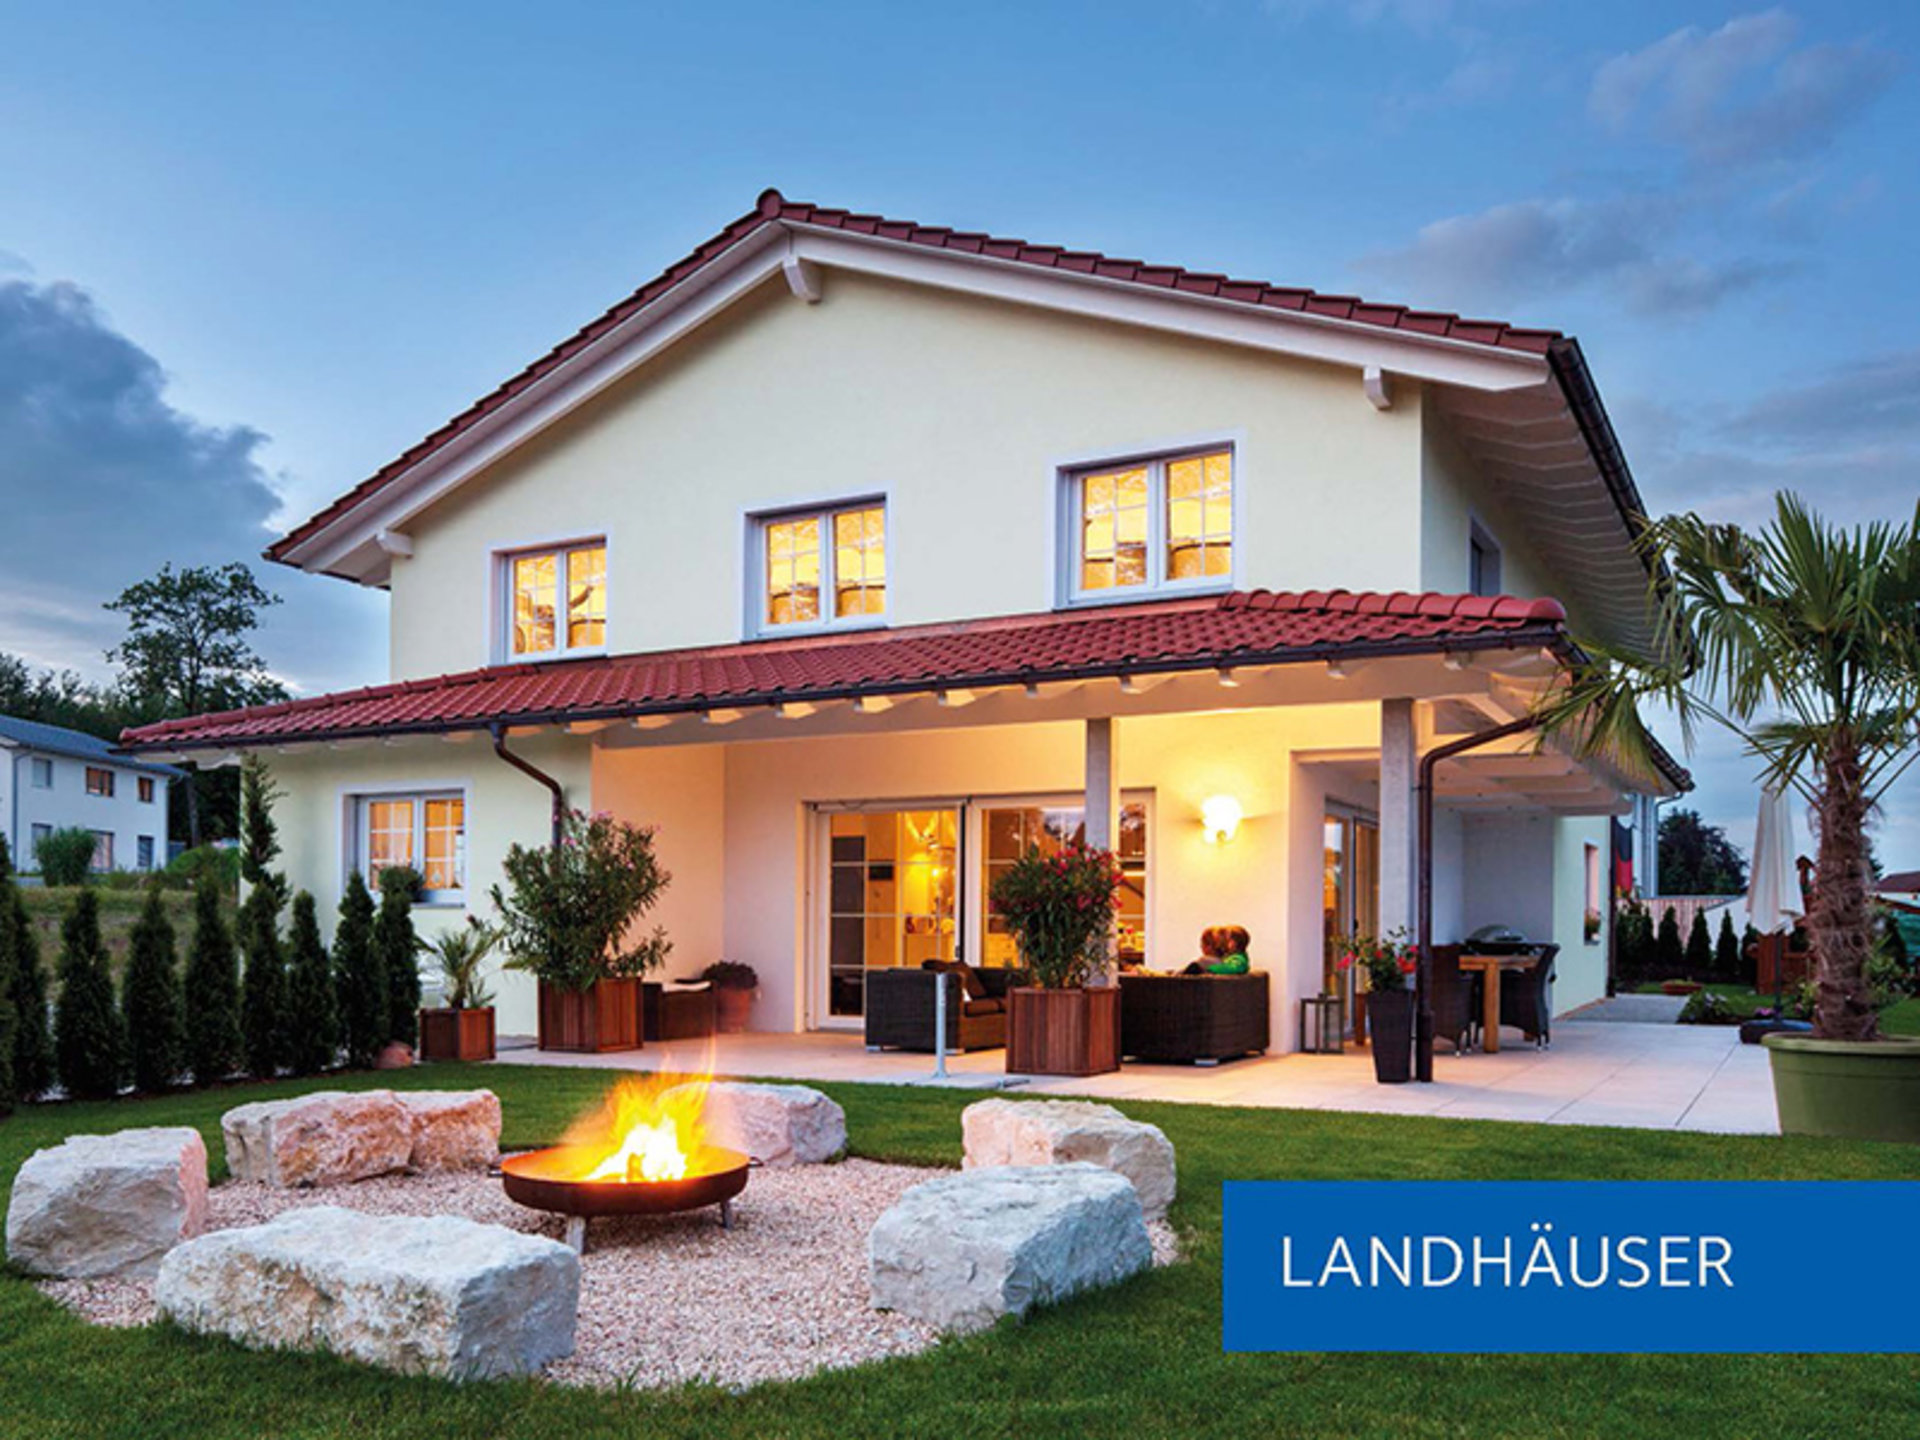 Einfamilienhaus Lehmann in der Kategorie "Landhäuser" (Foto: © BAUMEISTER-HAUS)